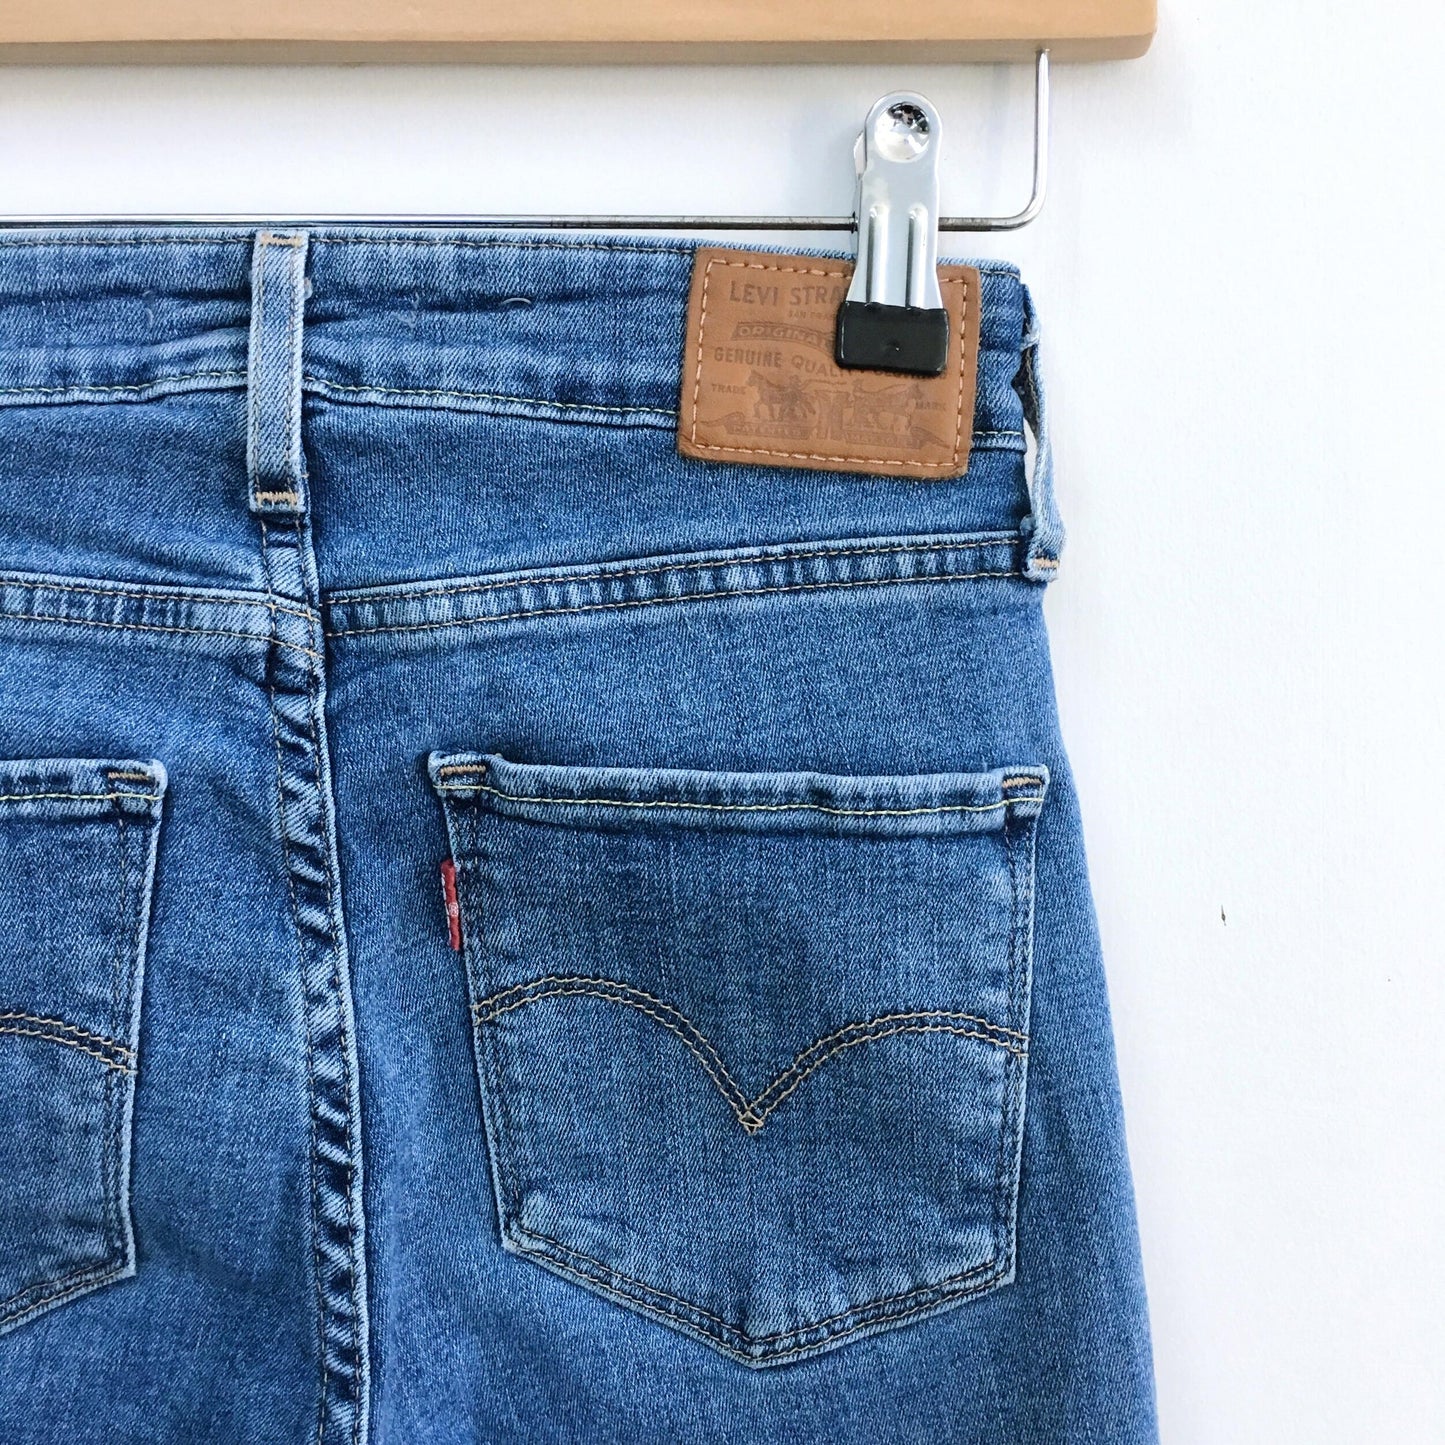 Levi's 721 hi-rise skinny jeans - size 25